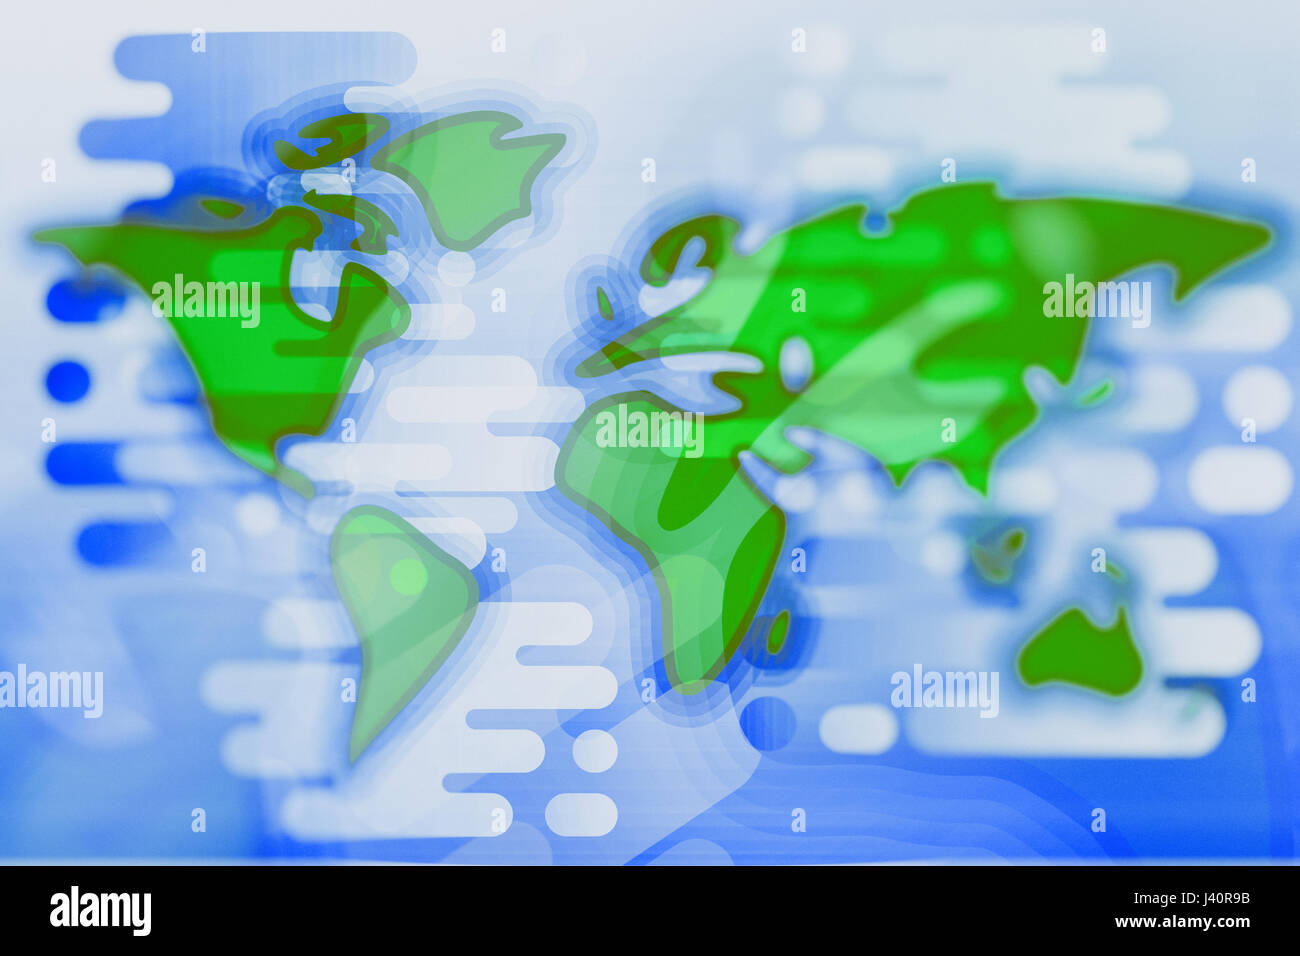 World map cartoon textured flat illustration Stock Photo